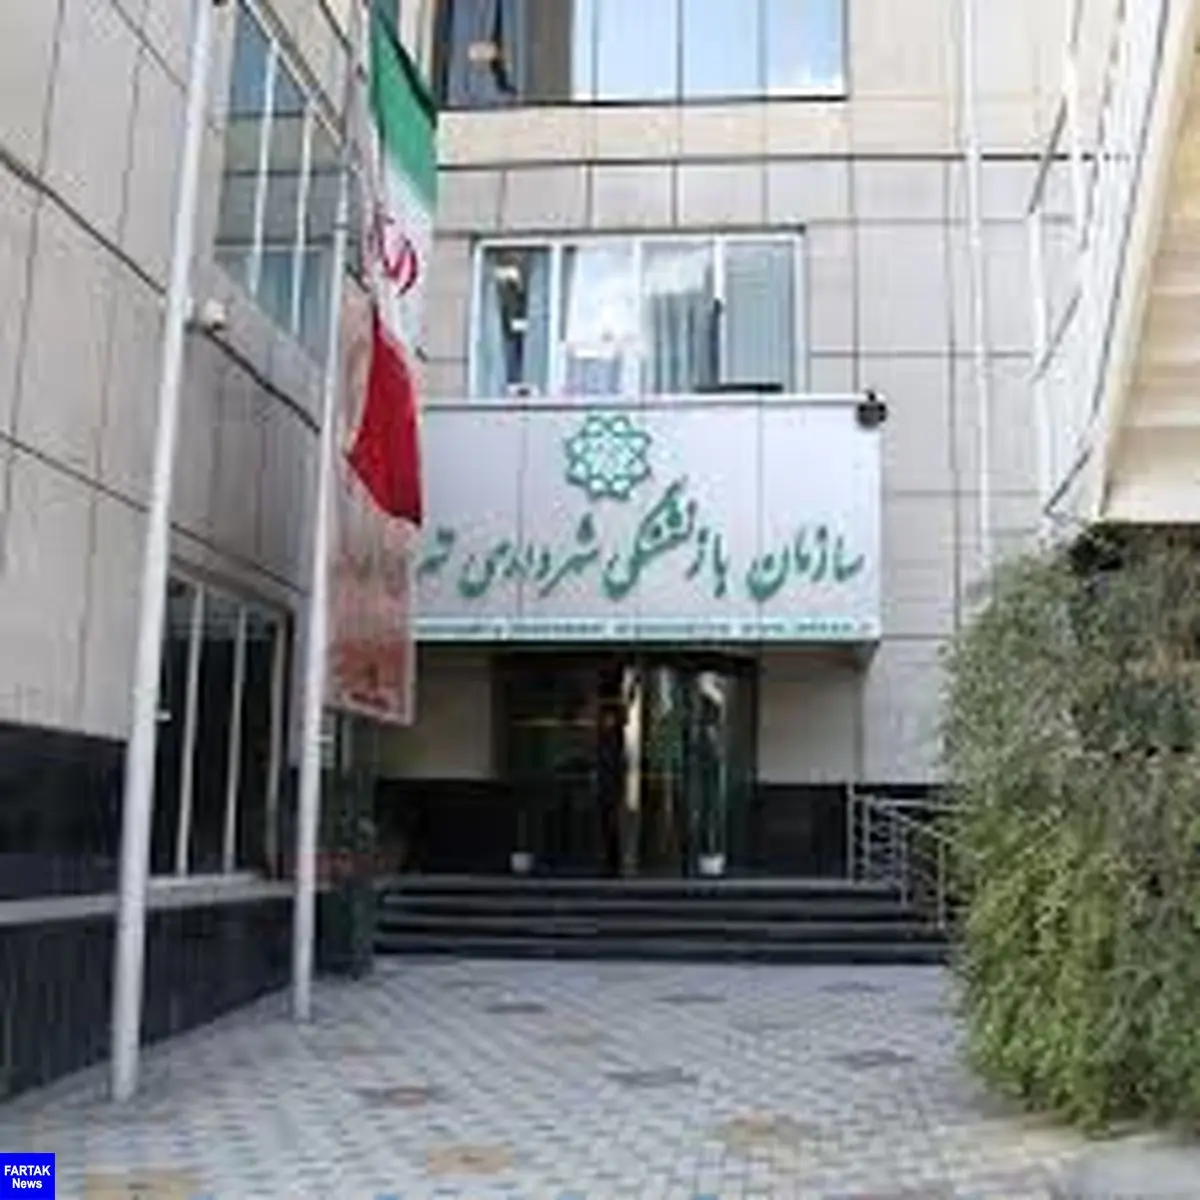 تهیه لیست بازنشستگان در شهرداری تهران